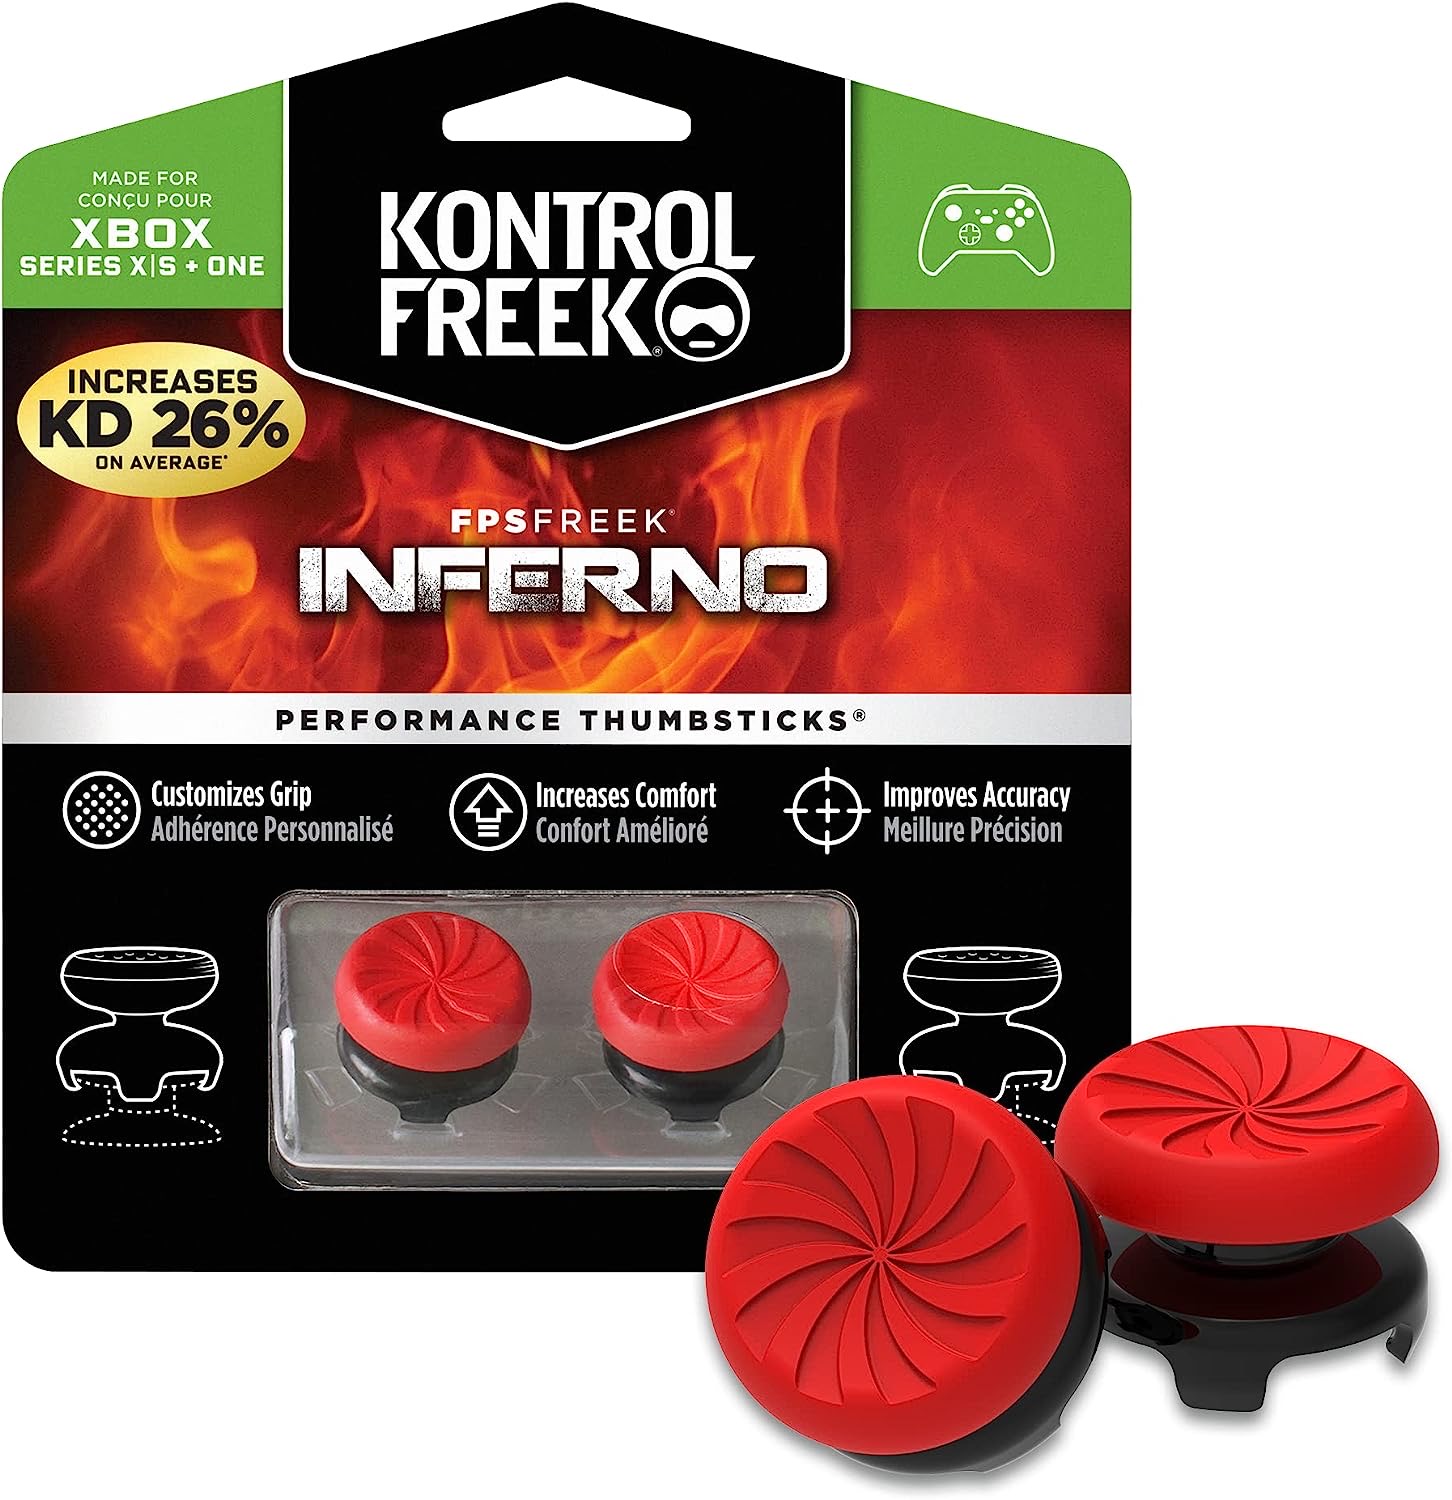 KontrolFreek Inferno Thumbsticks 2 Alturas elevadas XBOX ONE/Series